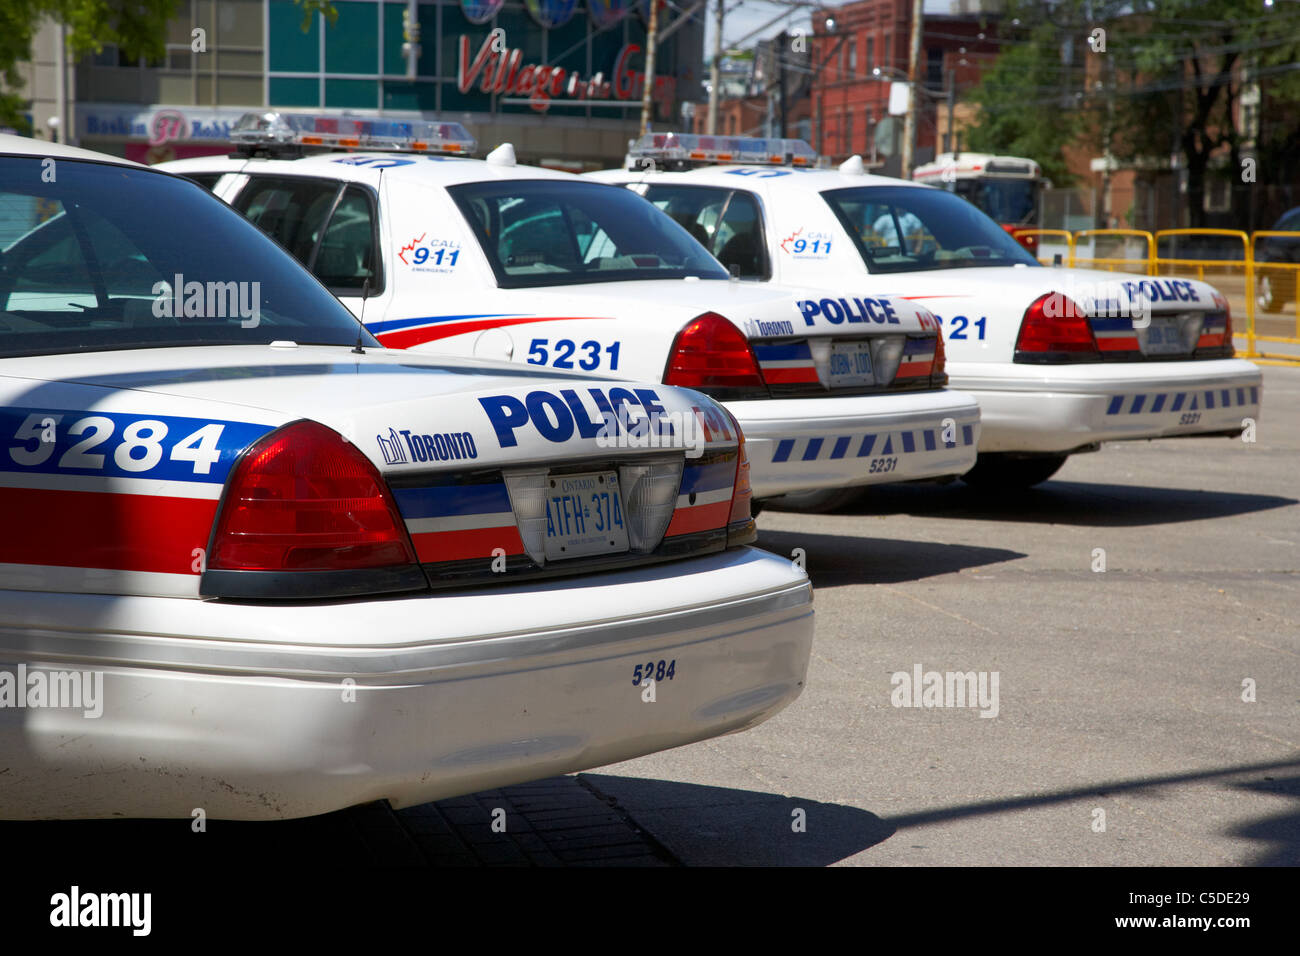 Toronto police squad en dehors des voitures de police dans le centre-ville de Toronto (Ontario) Canada Banque D'Images